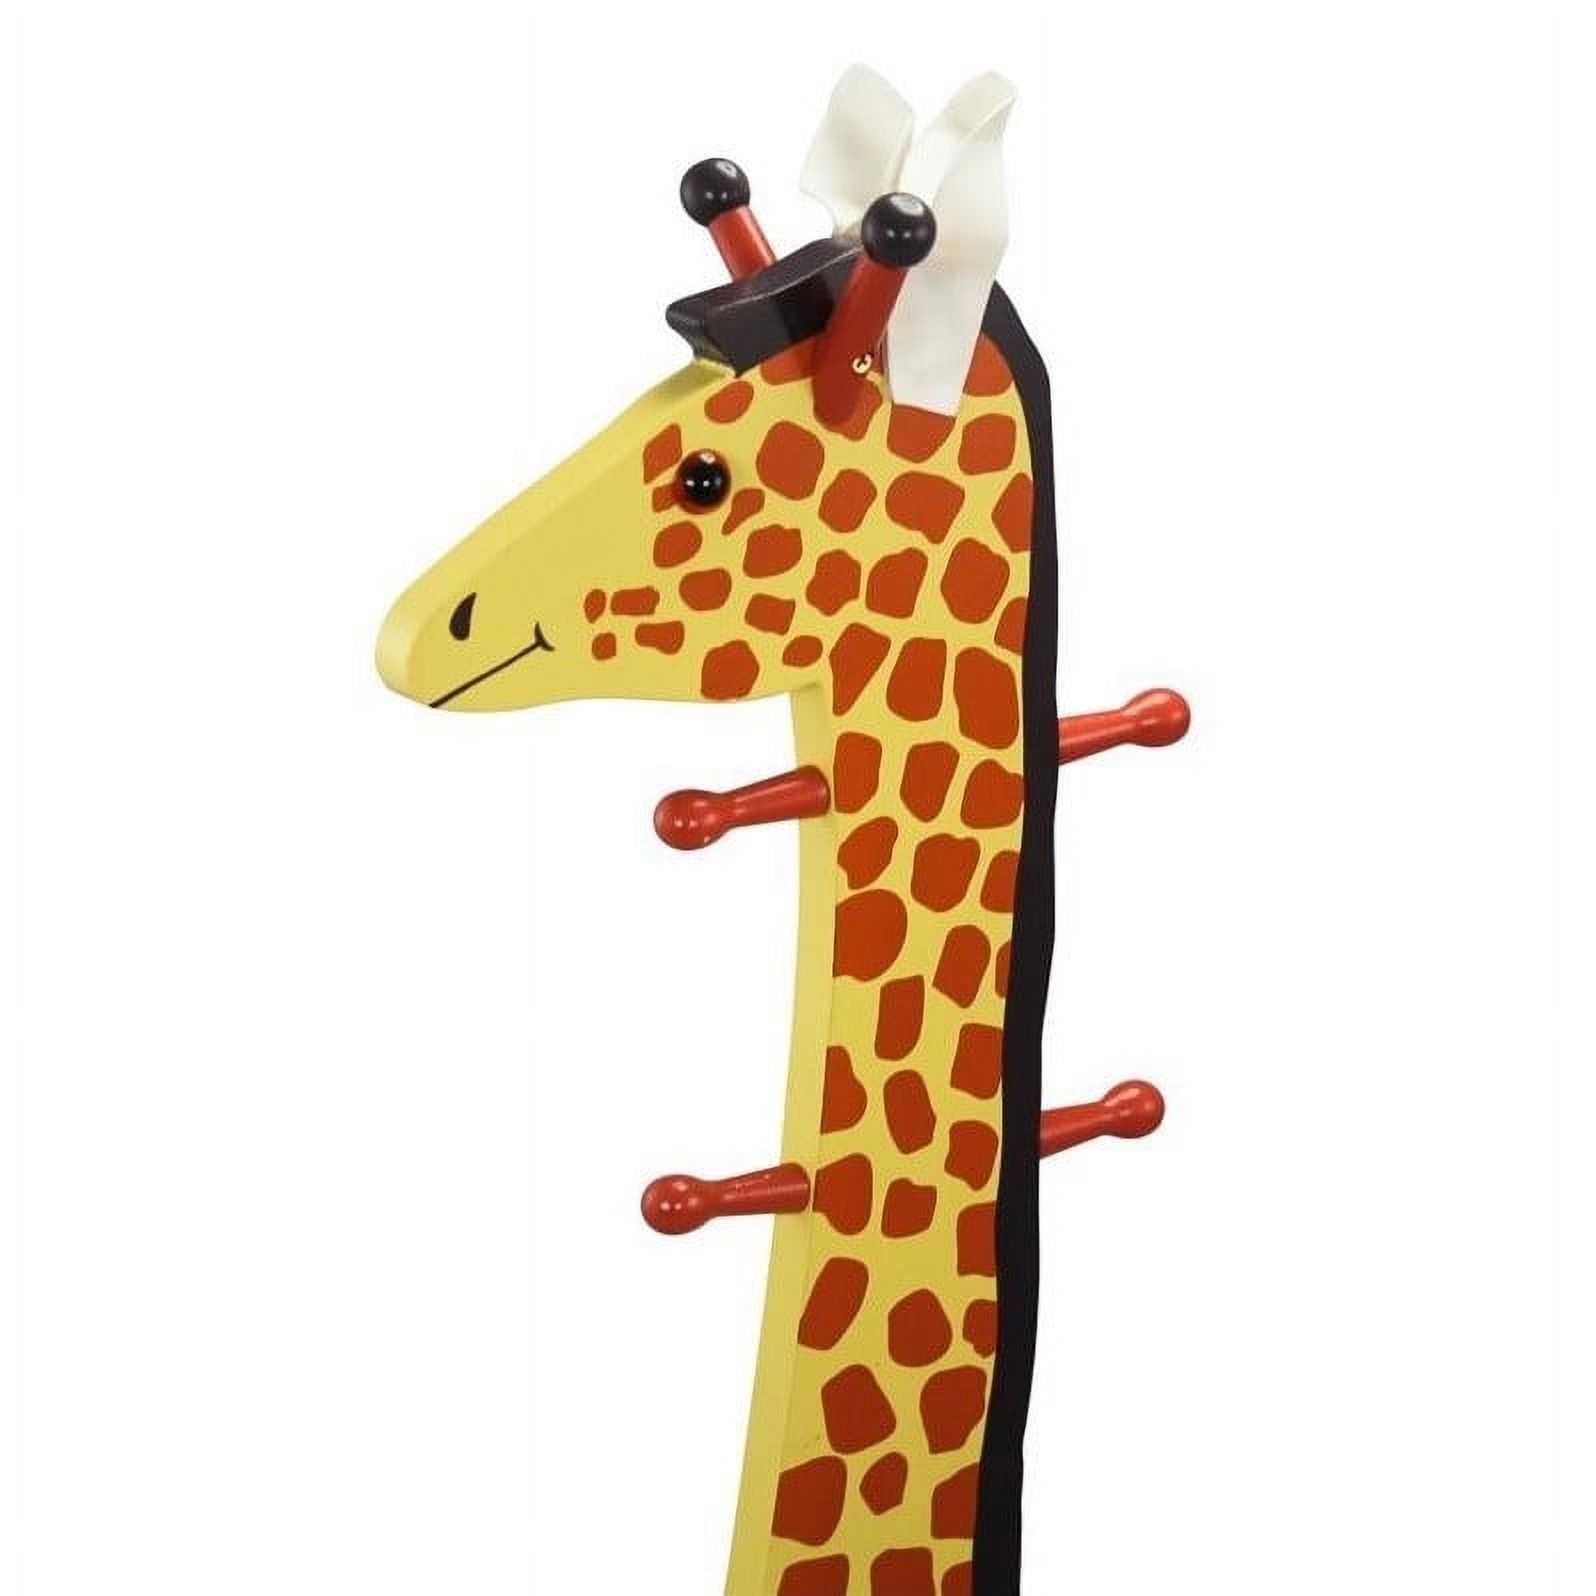 Teamson Design Giraffe Wooden Bedroom Kids Indoor Standing Coat Rack and Stool - image 3 of 3